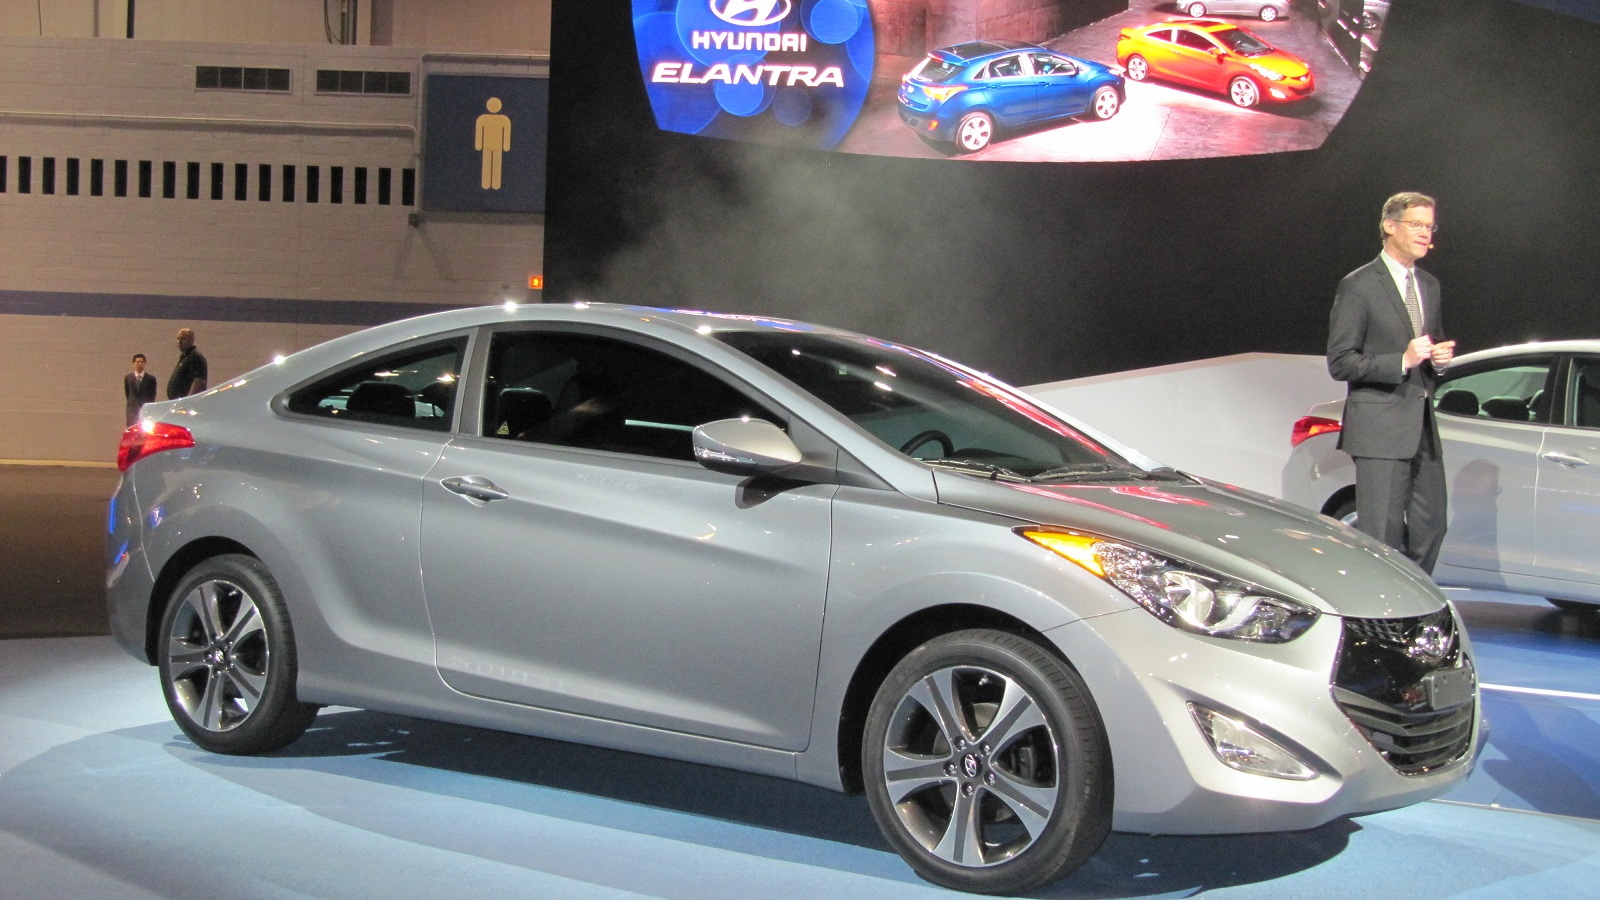 2013 Hyundai Elantra Coupe, Chicago Auto Show, Jan 2012